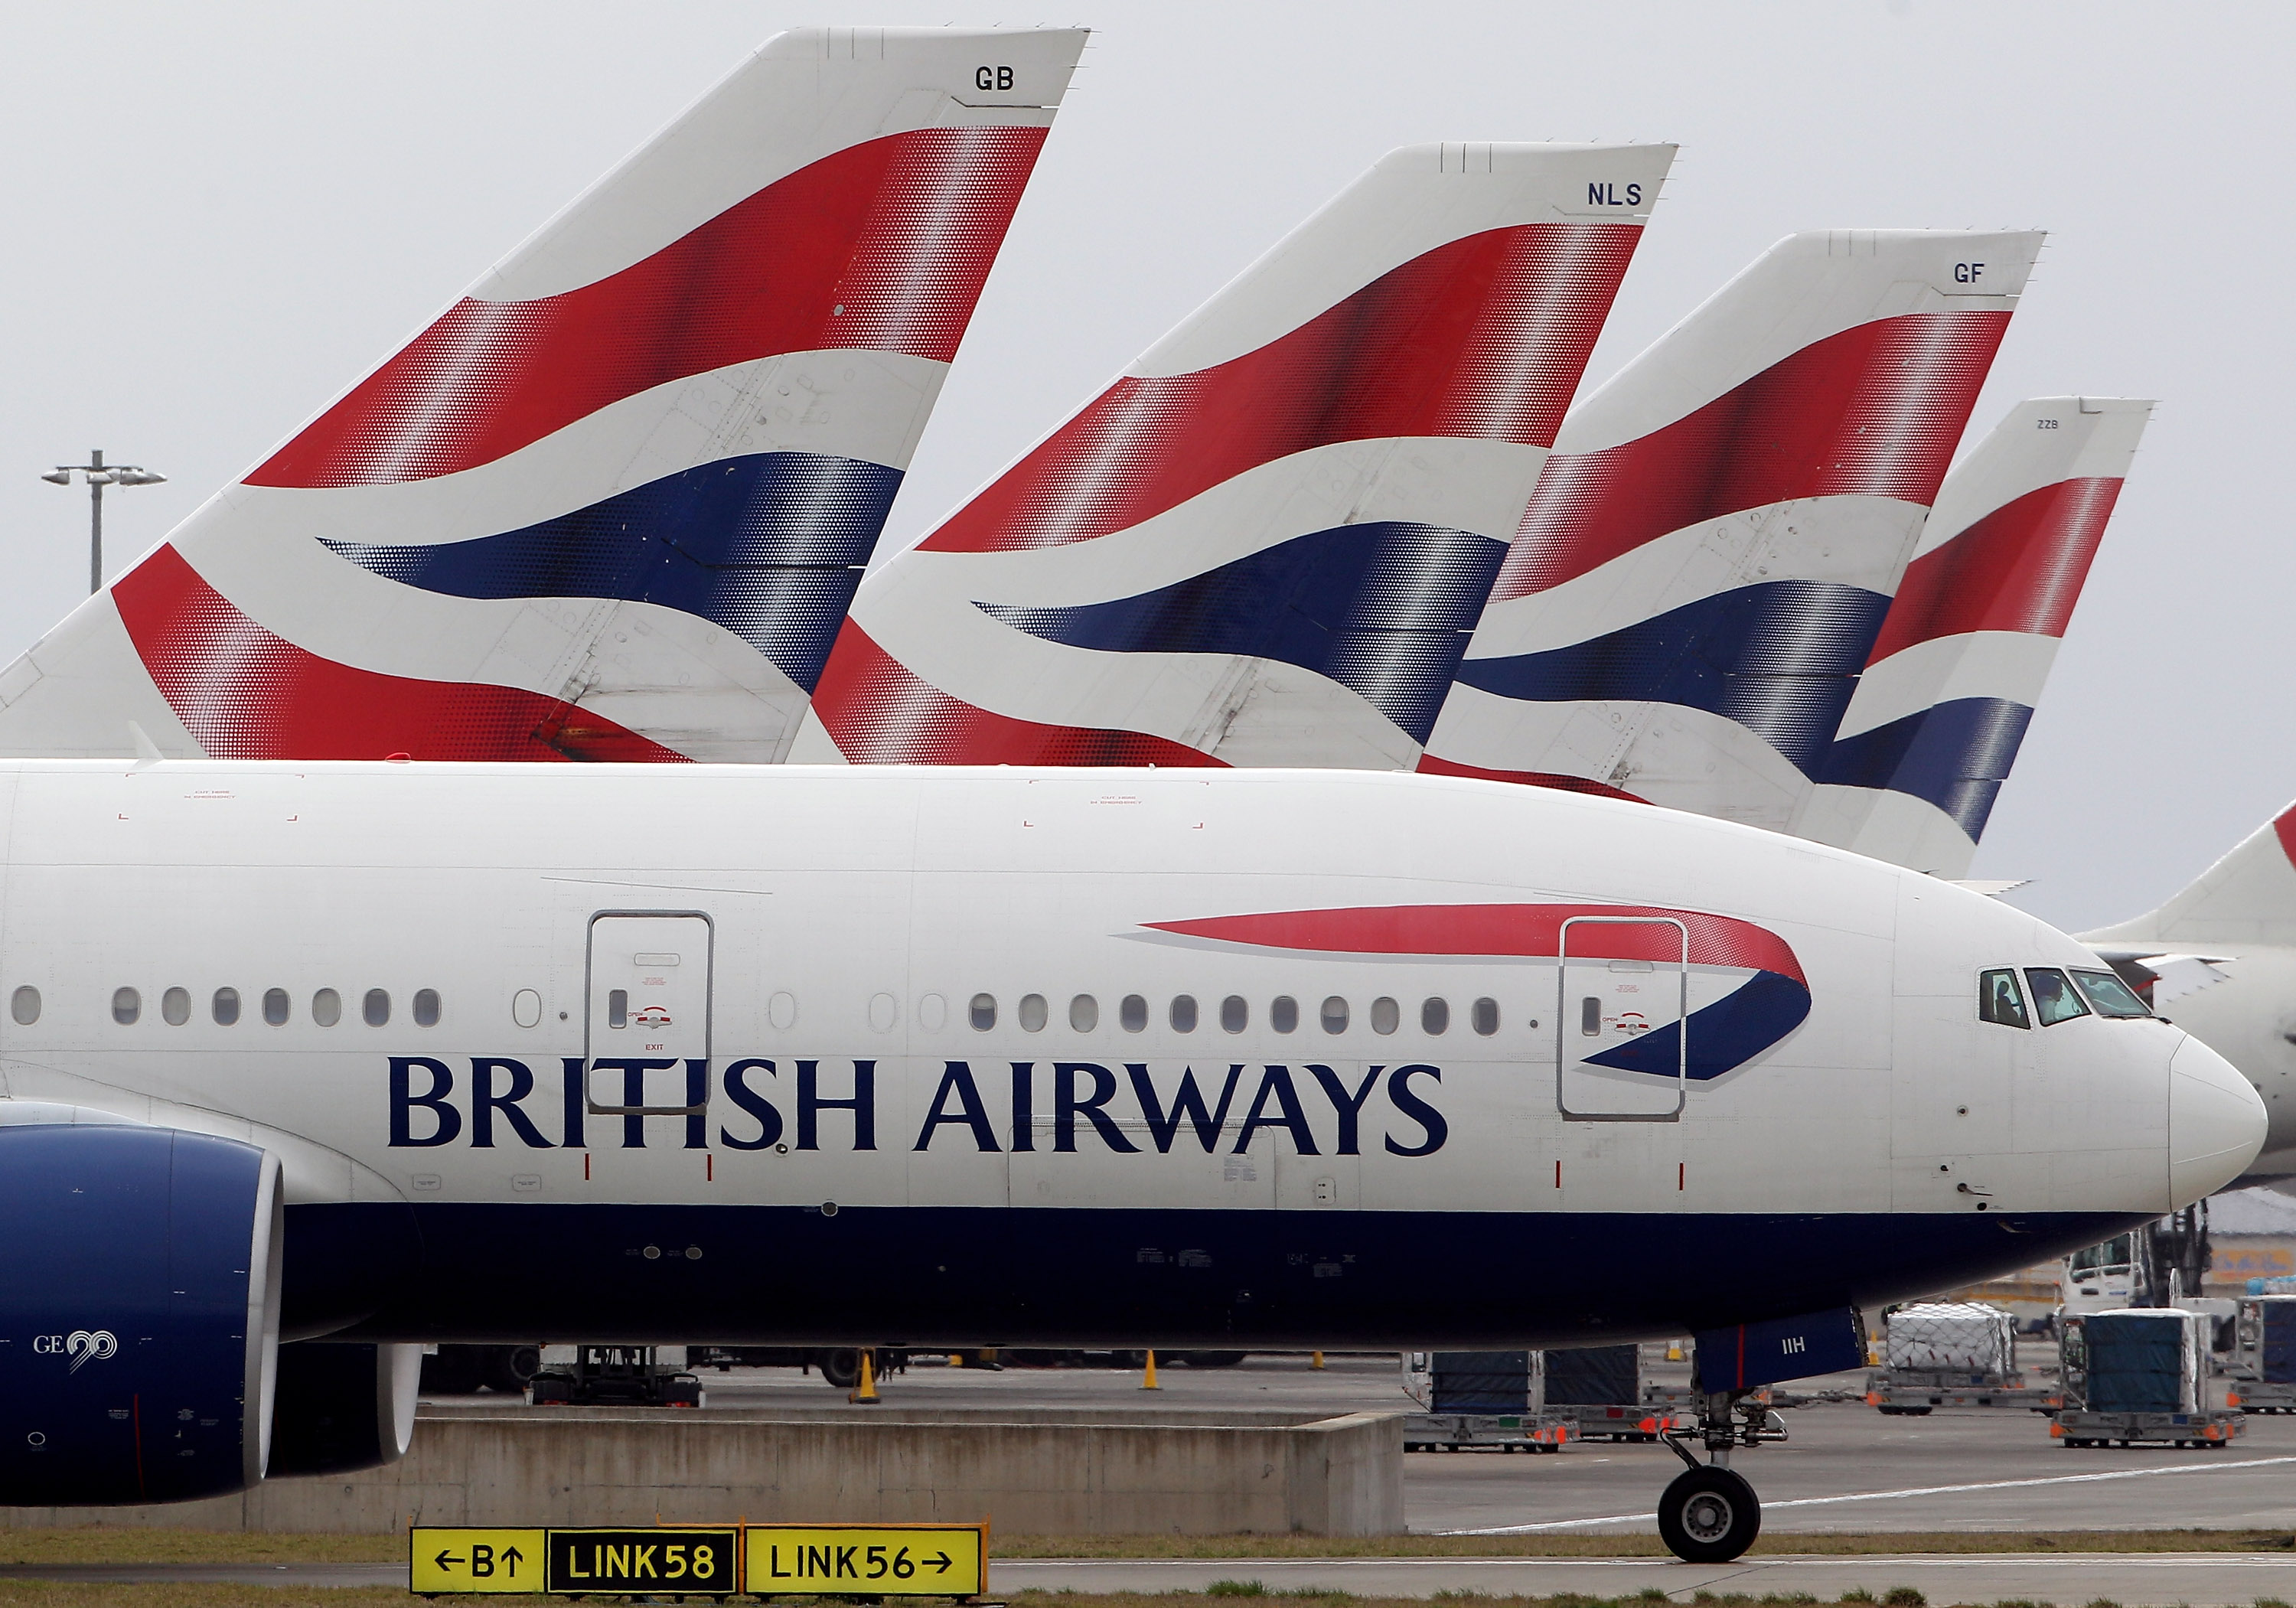 Nel 2018 due nuovi voli British Airways collegheranno Firenze a Manchester e Edimburgo